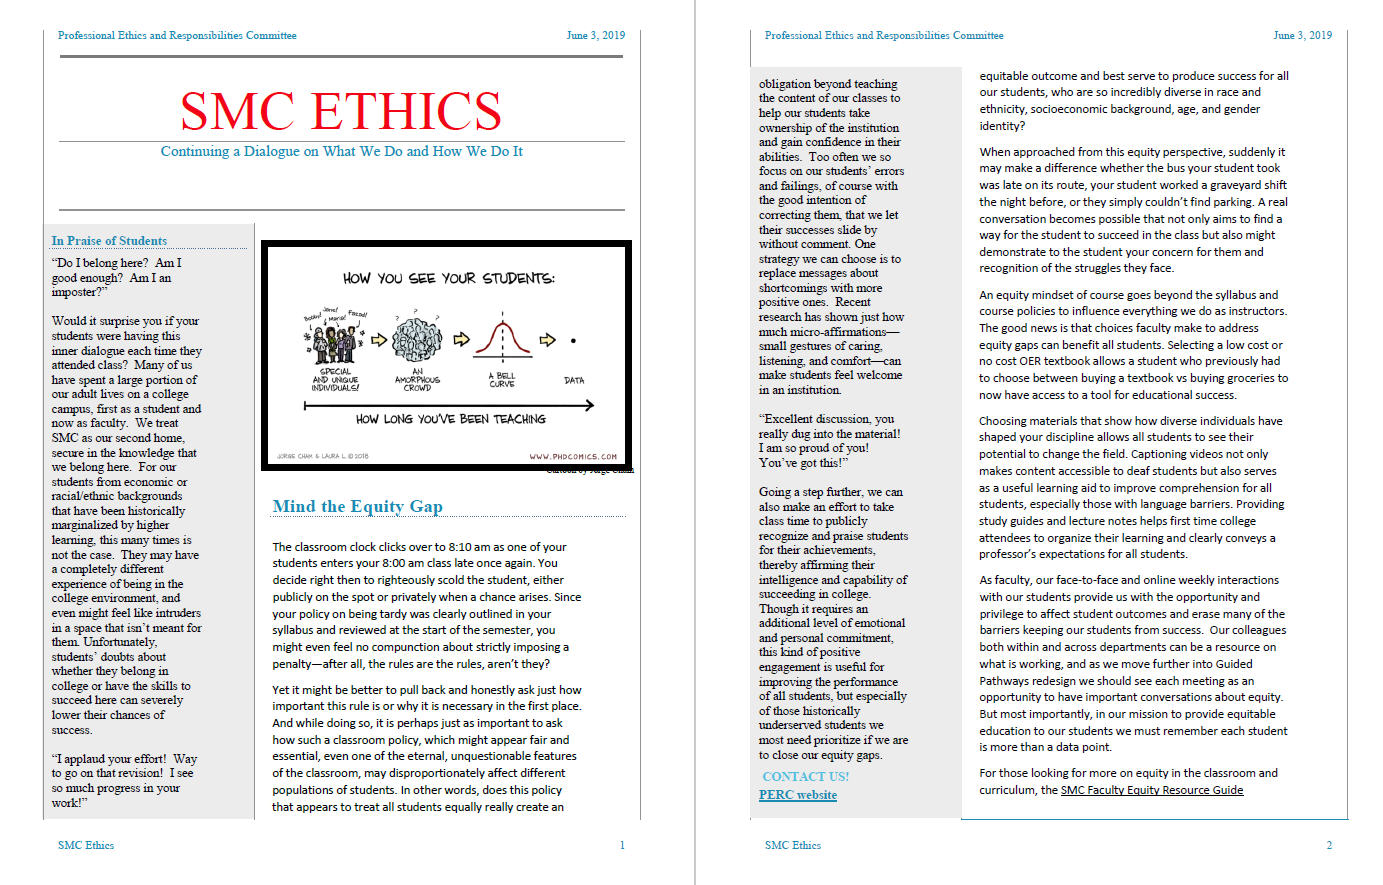 SMC Ethics newsletter